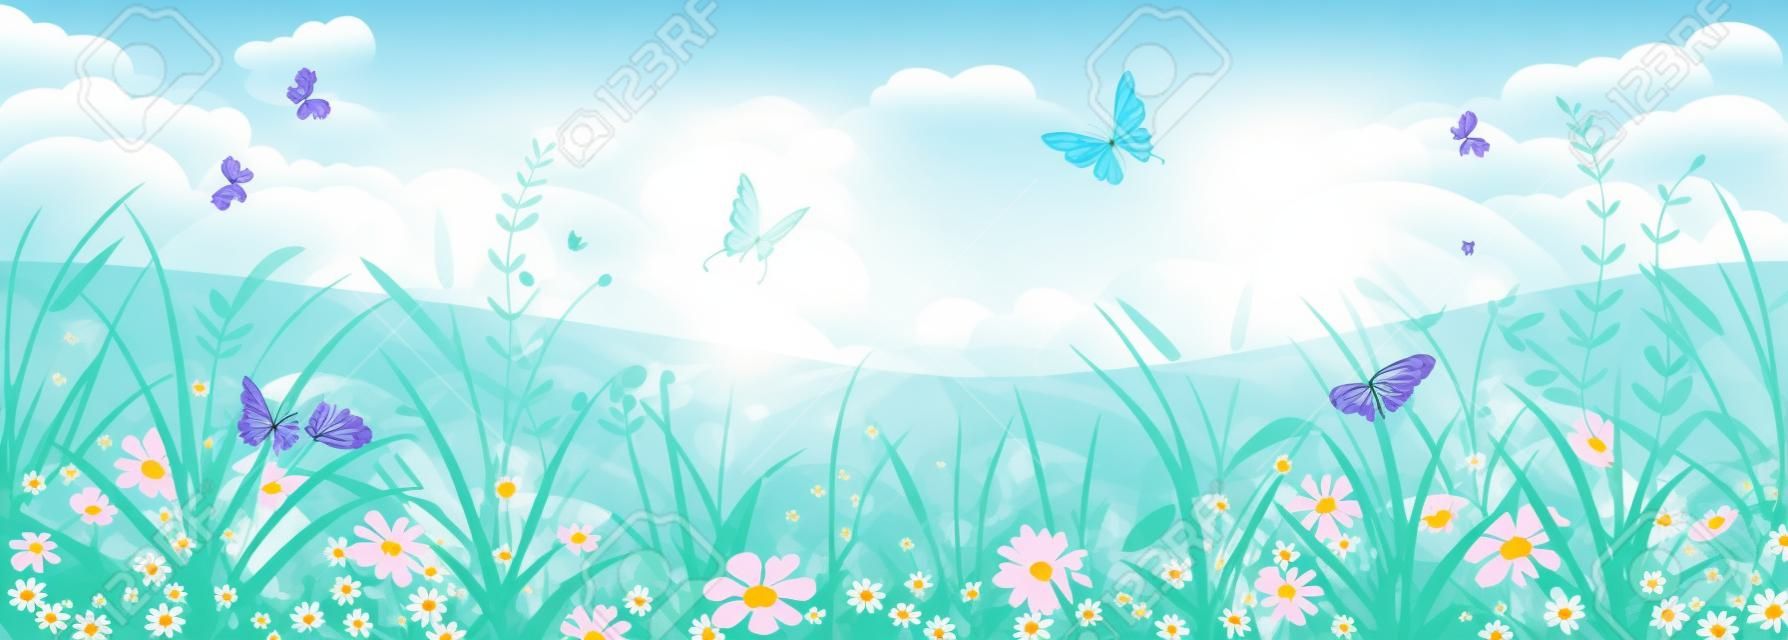 Floral Sommer oder Frühling Landschaft, Wiese mit Blumen, blauer Himmel und Schmetterlinge